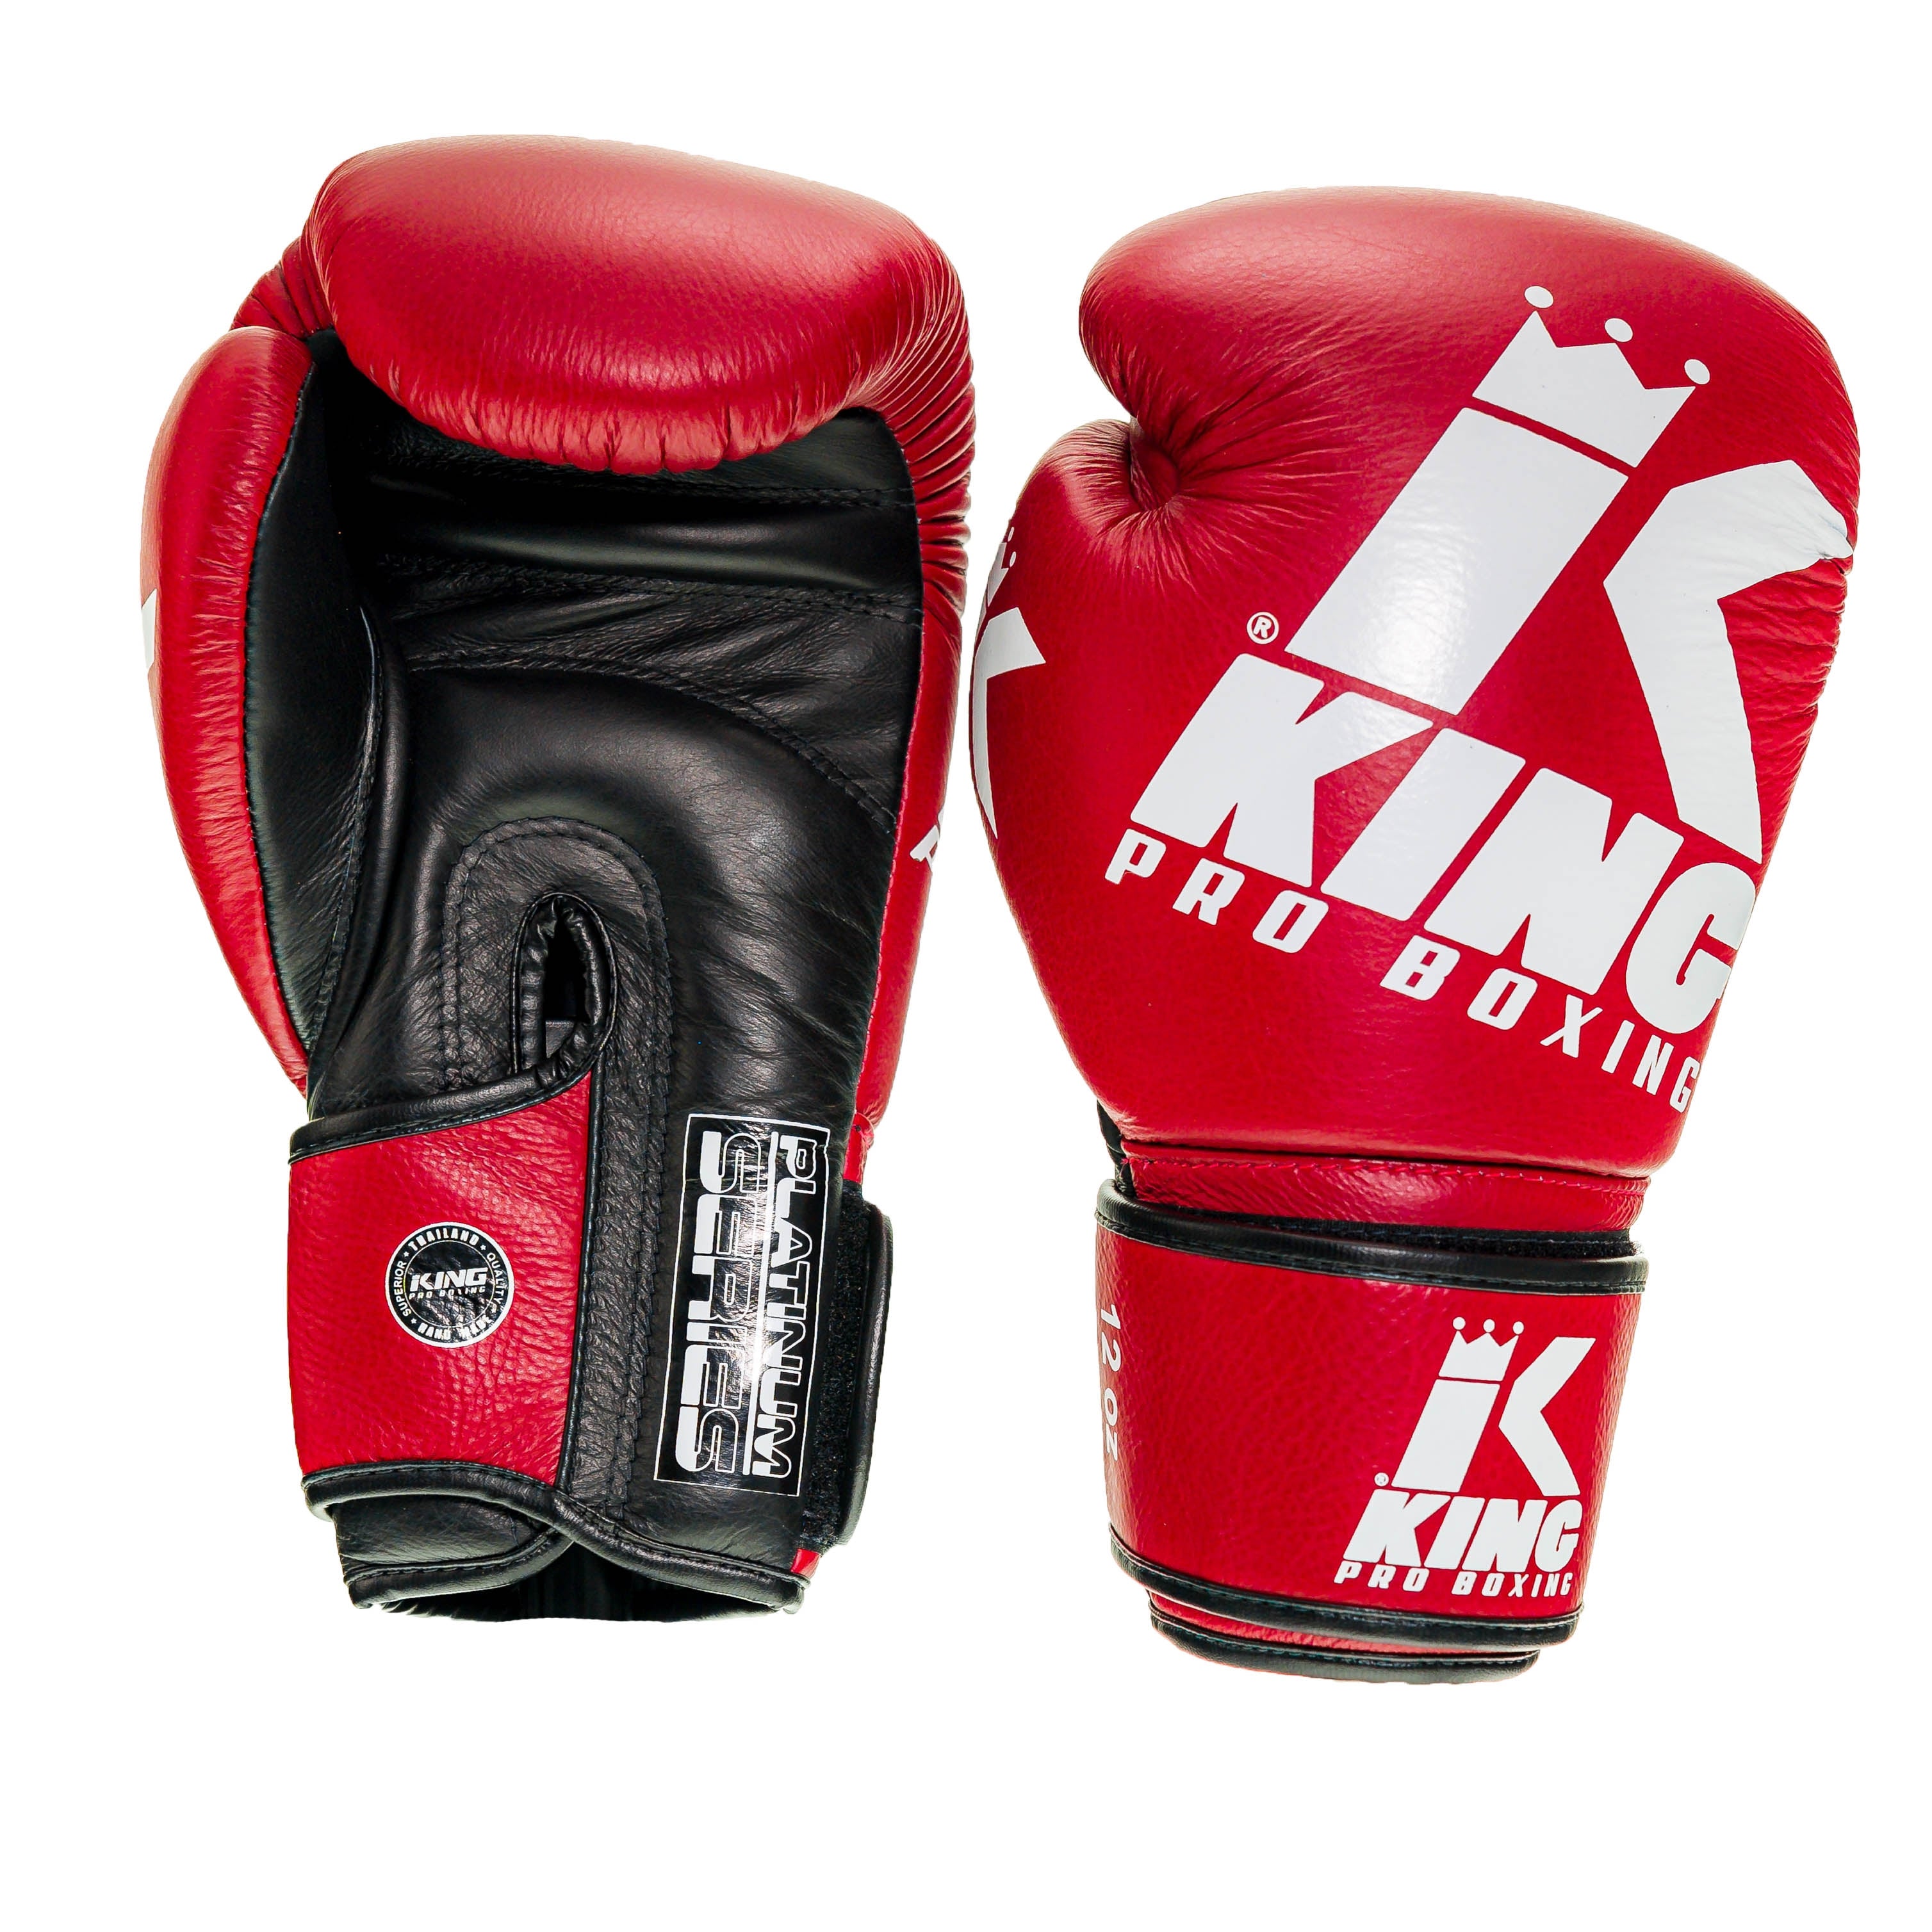 Gants de boxe King PRO boxing - BG PLATINUM 4